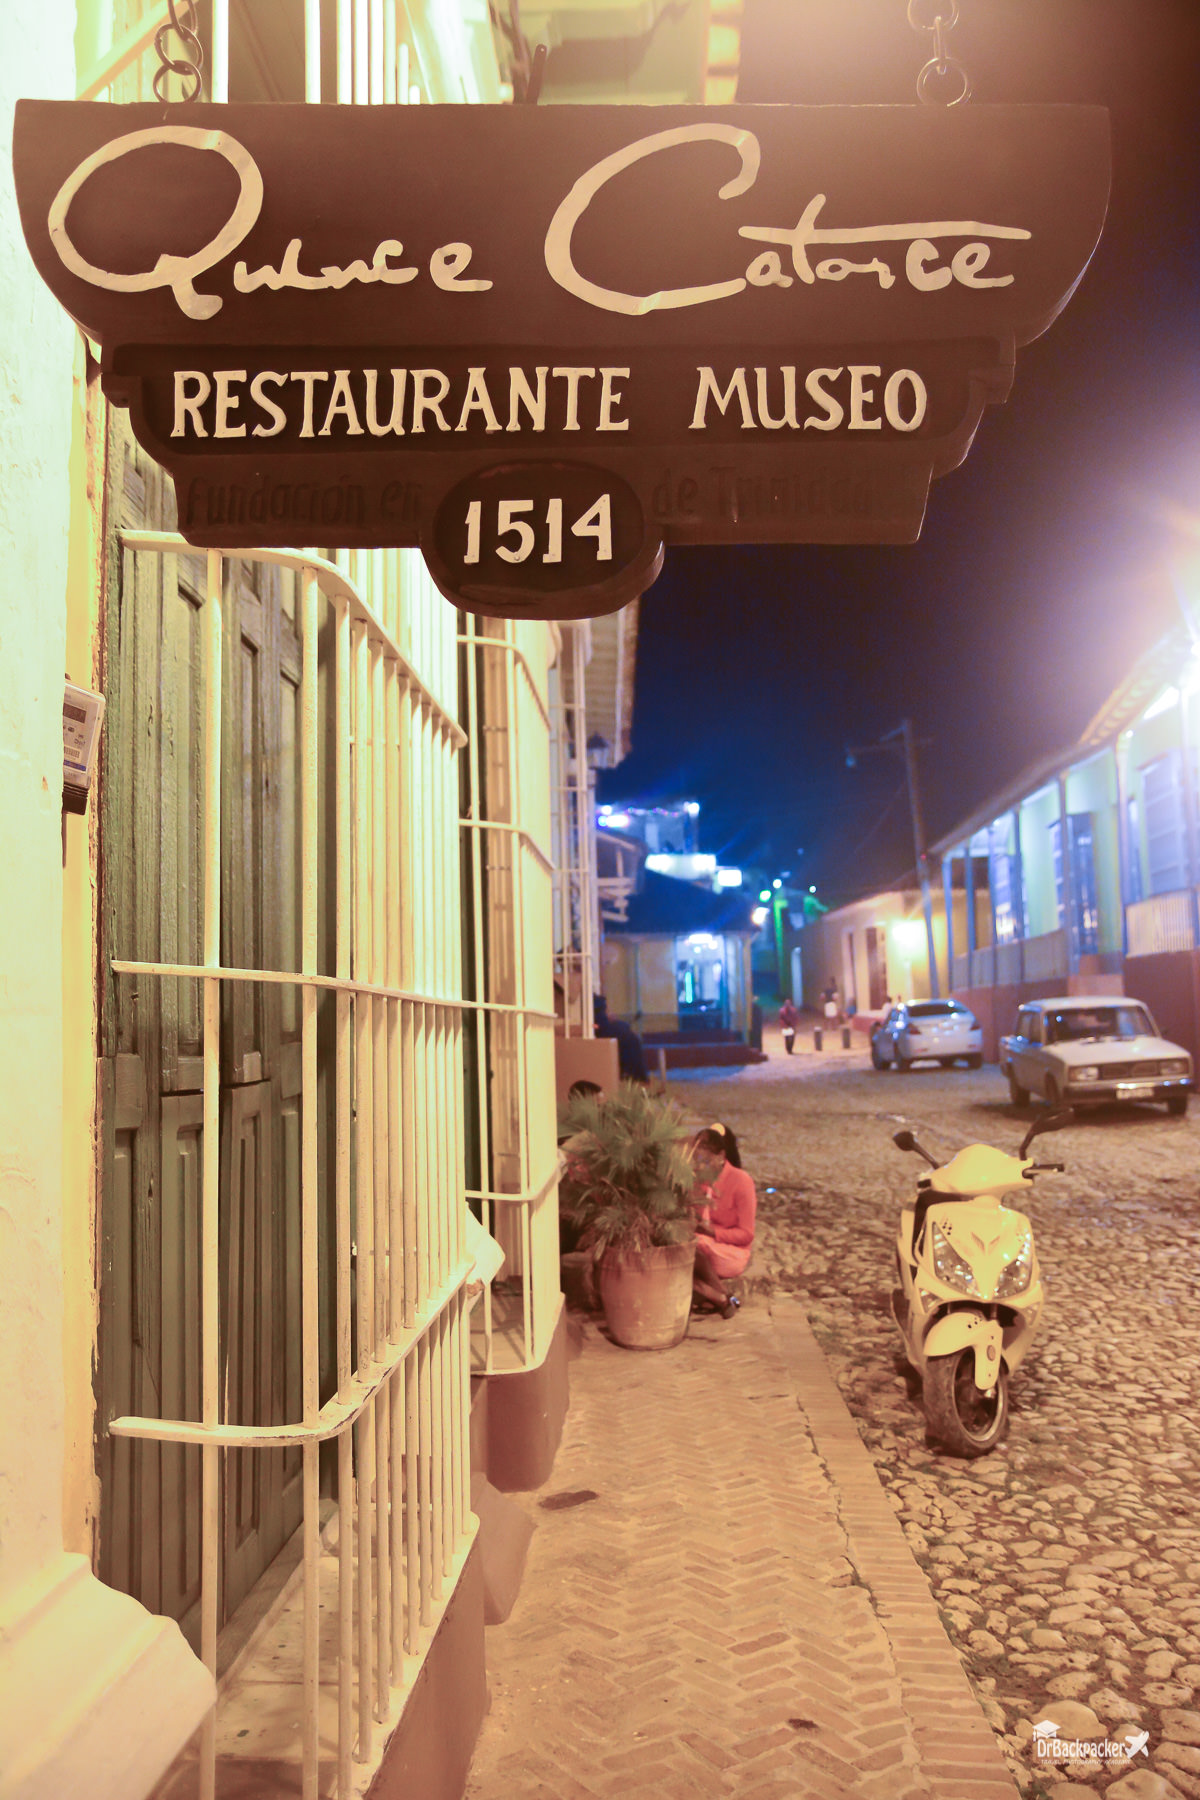 Restaurante Museo 1514 